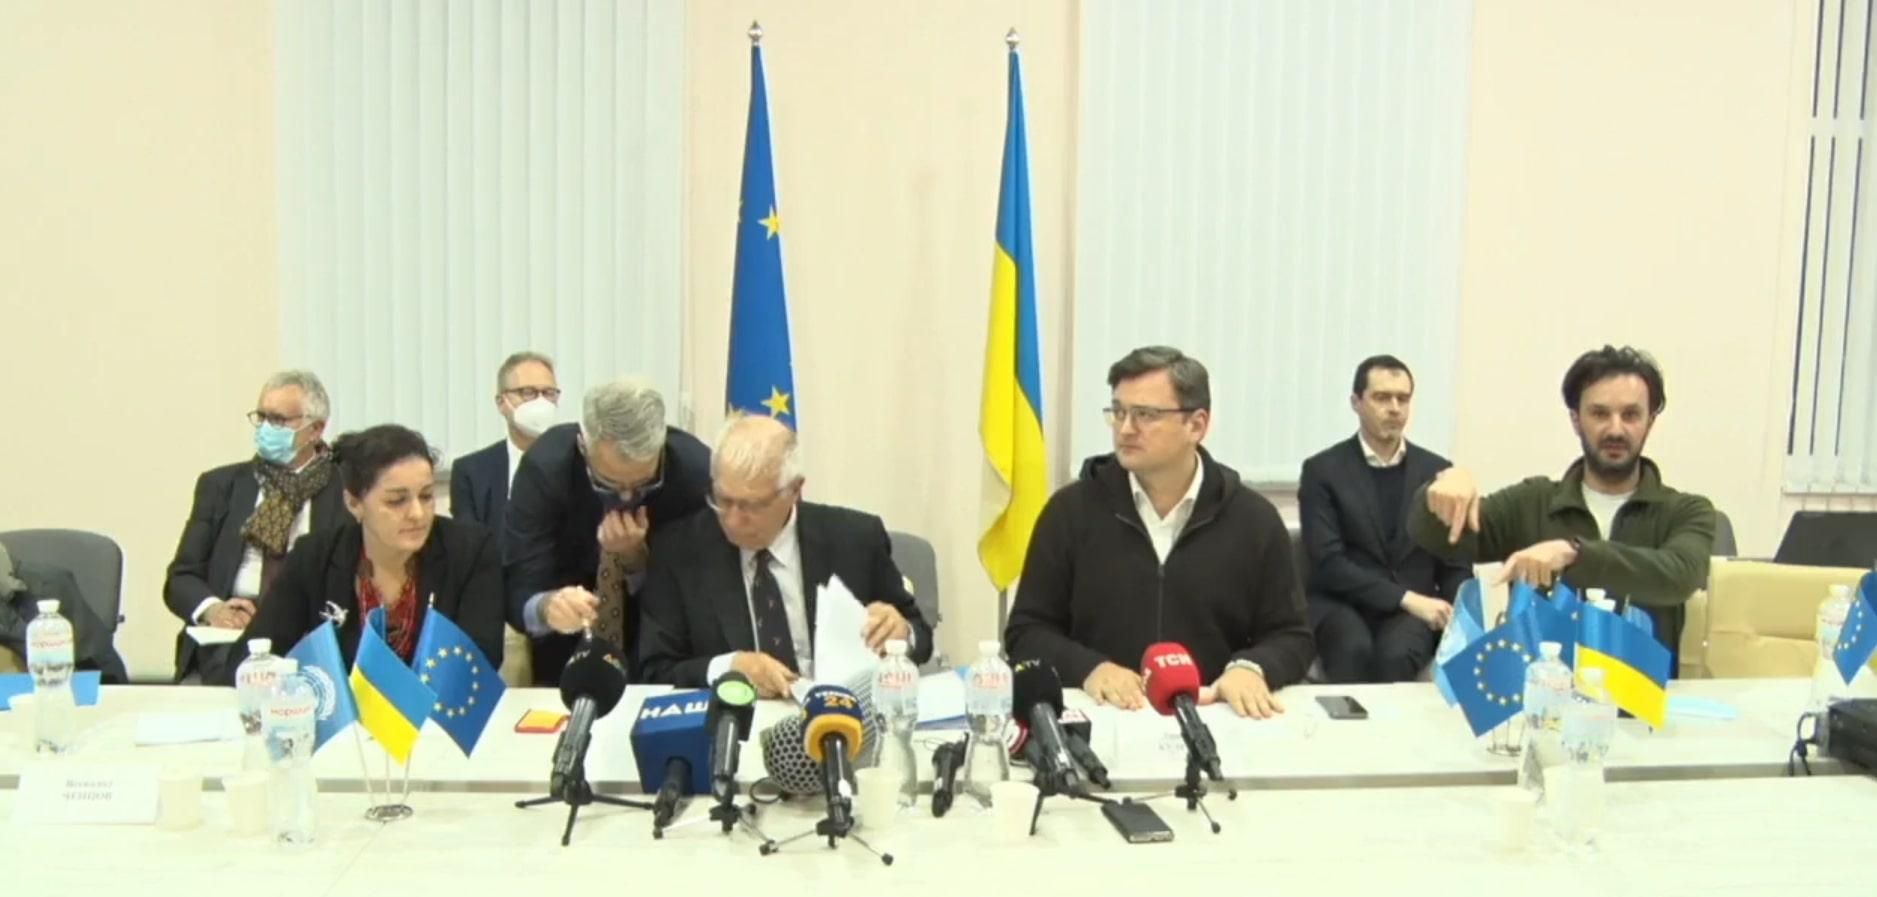 "ЕС стоит бок о бок с Украиной": Боррель и Кулеба дали пресс-конференцию в Станице Луганской